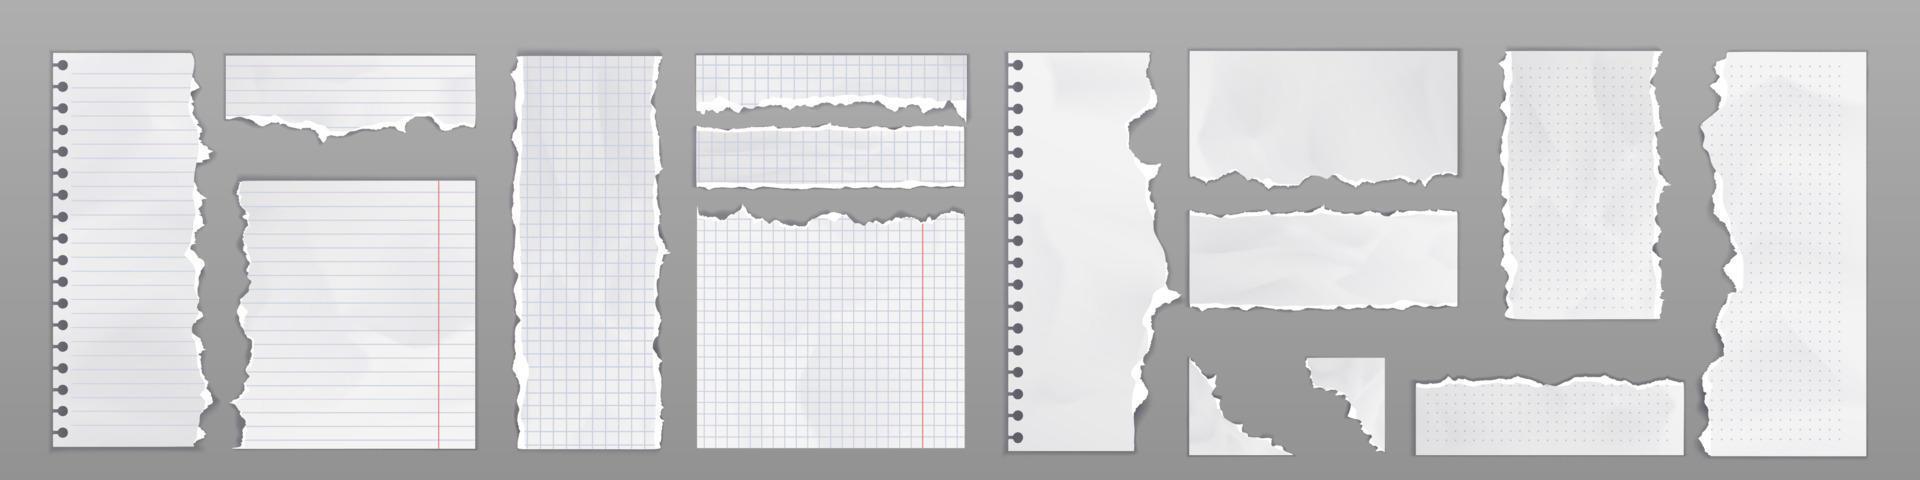 páginas de caderno e folhas de papel com bordas rasgadas vetor